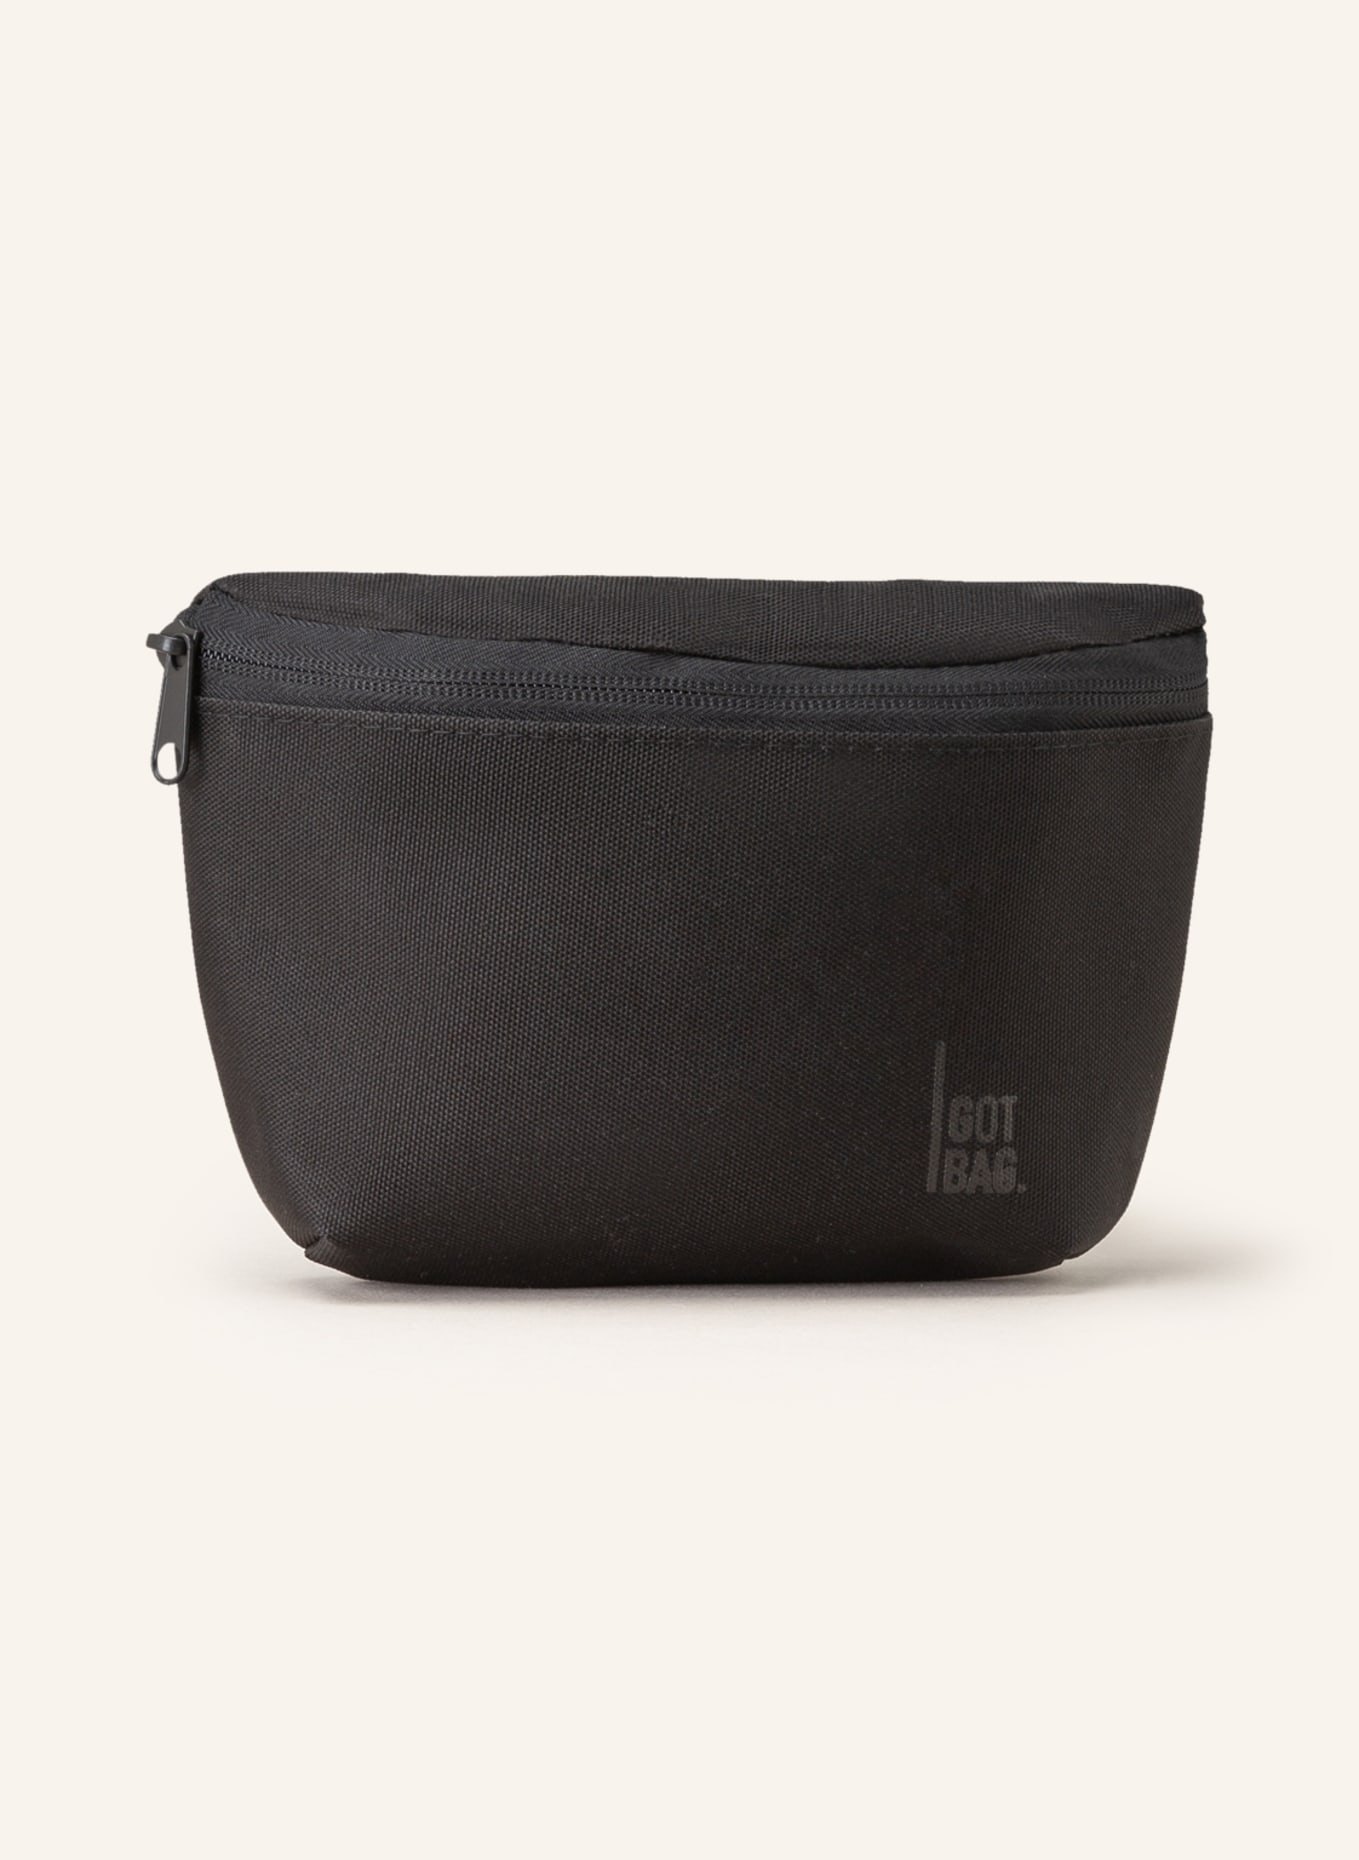 GOT BAG Waist bag, Color: BLACK (Image 1)